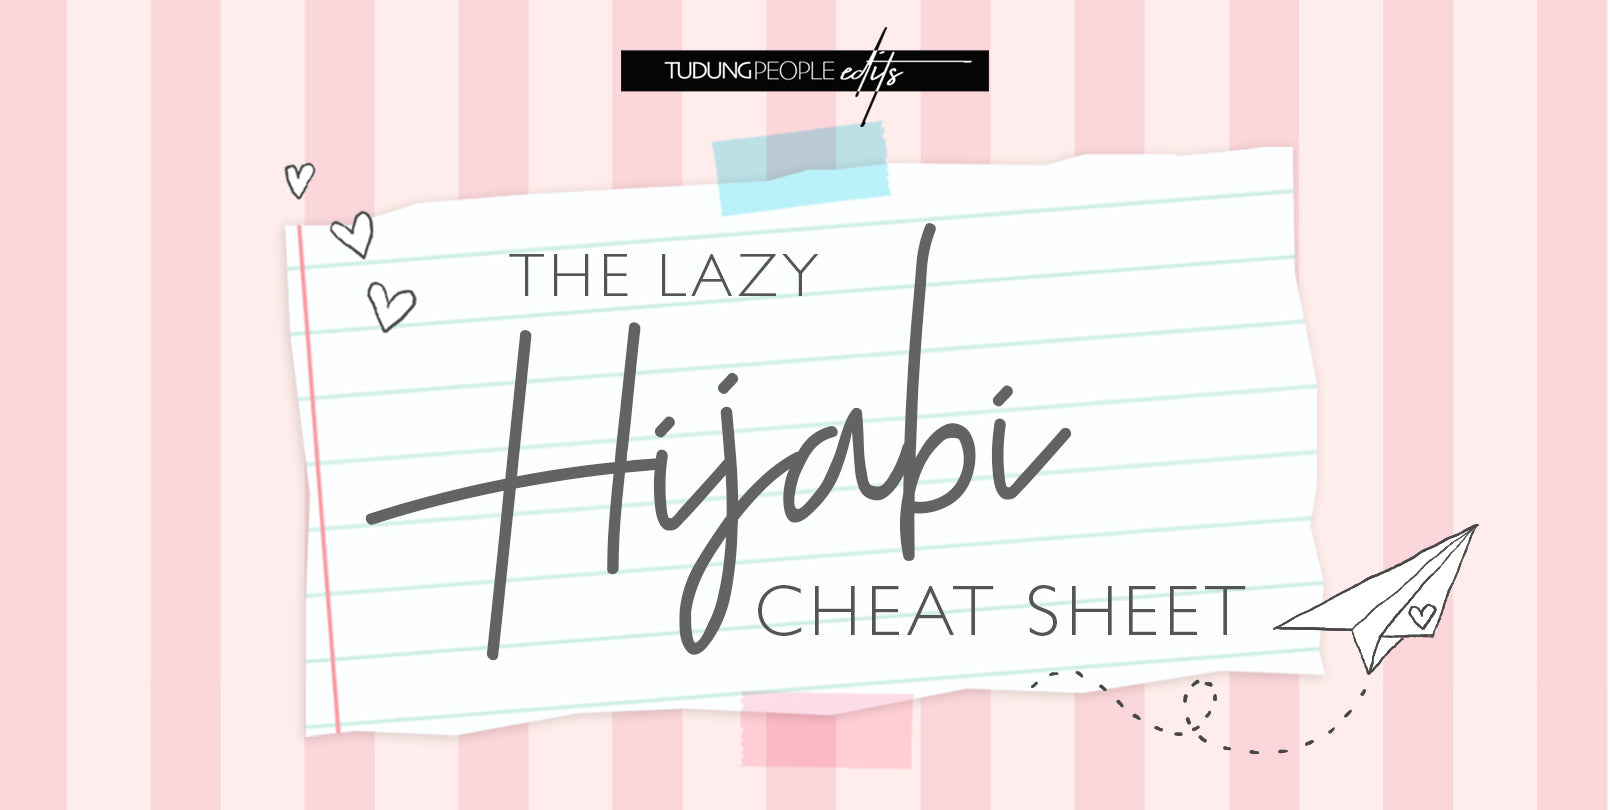 The ultimate lazy hijabi cheat sheet